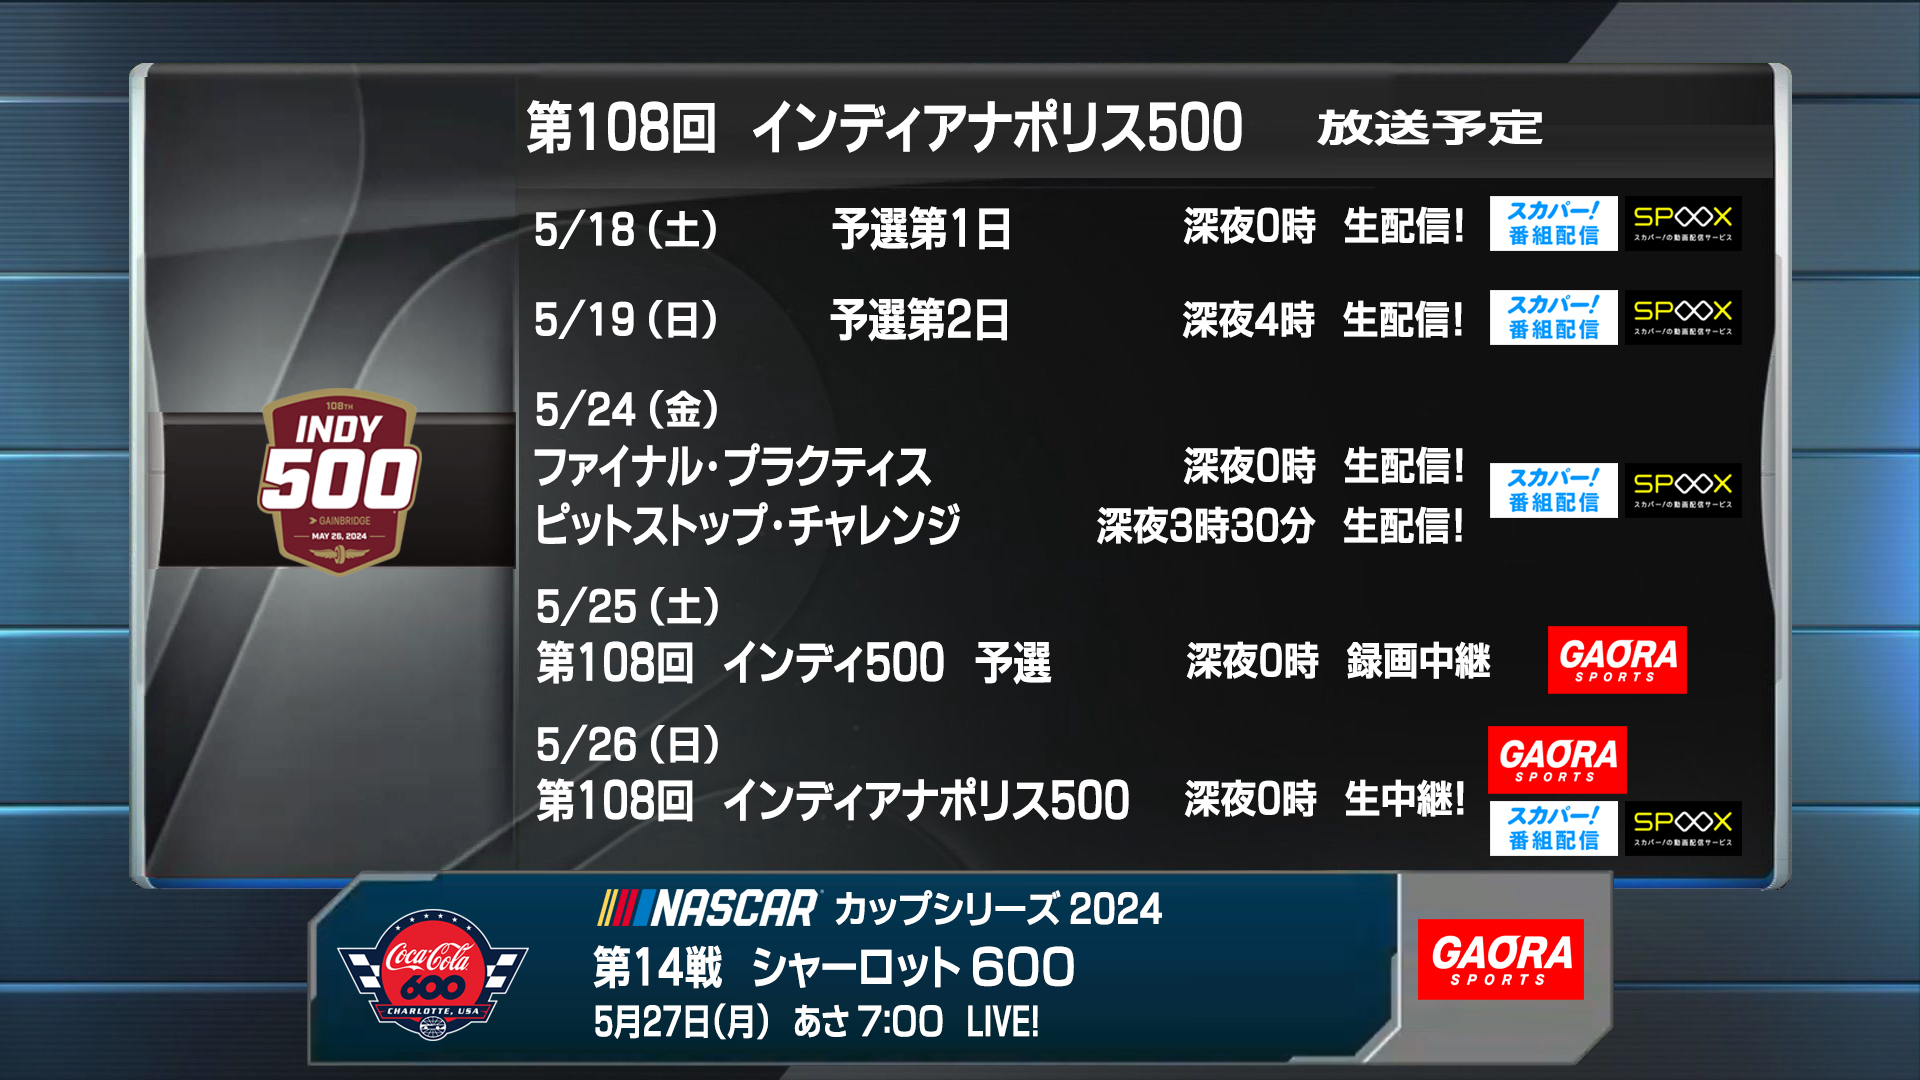 第108回インディ500 5月の放送予定 - こちら GAORA SPORTS インディカー 実況室 インディカー・シリーズ